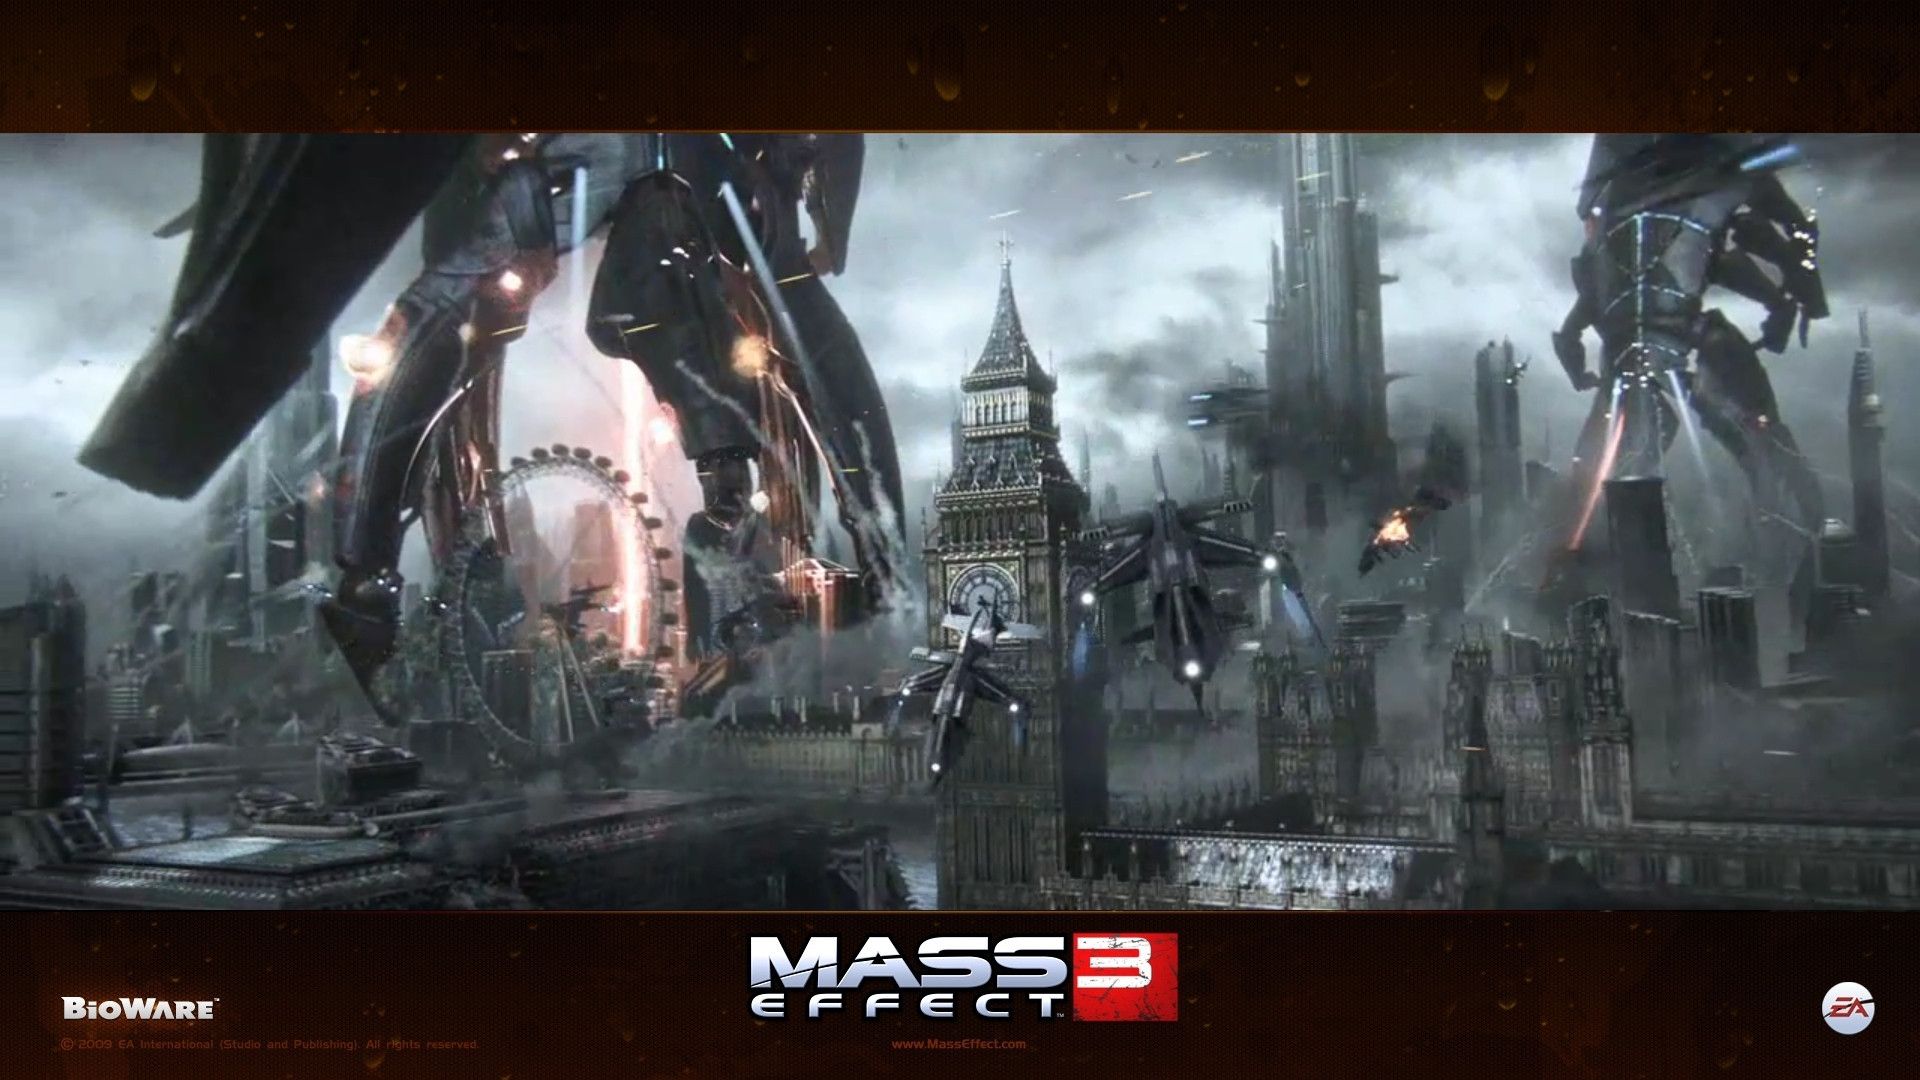 Pix For Mass Effect Reaper Wallpaper